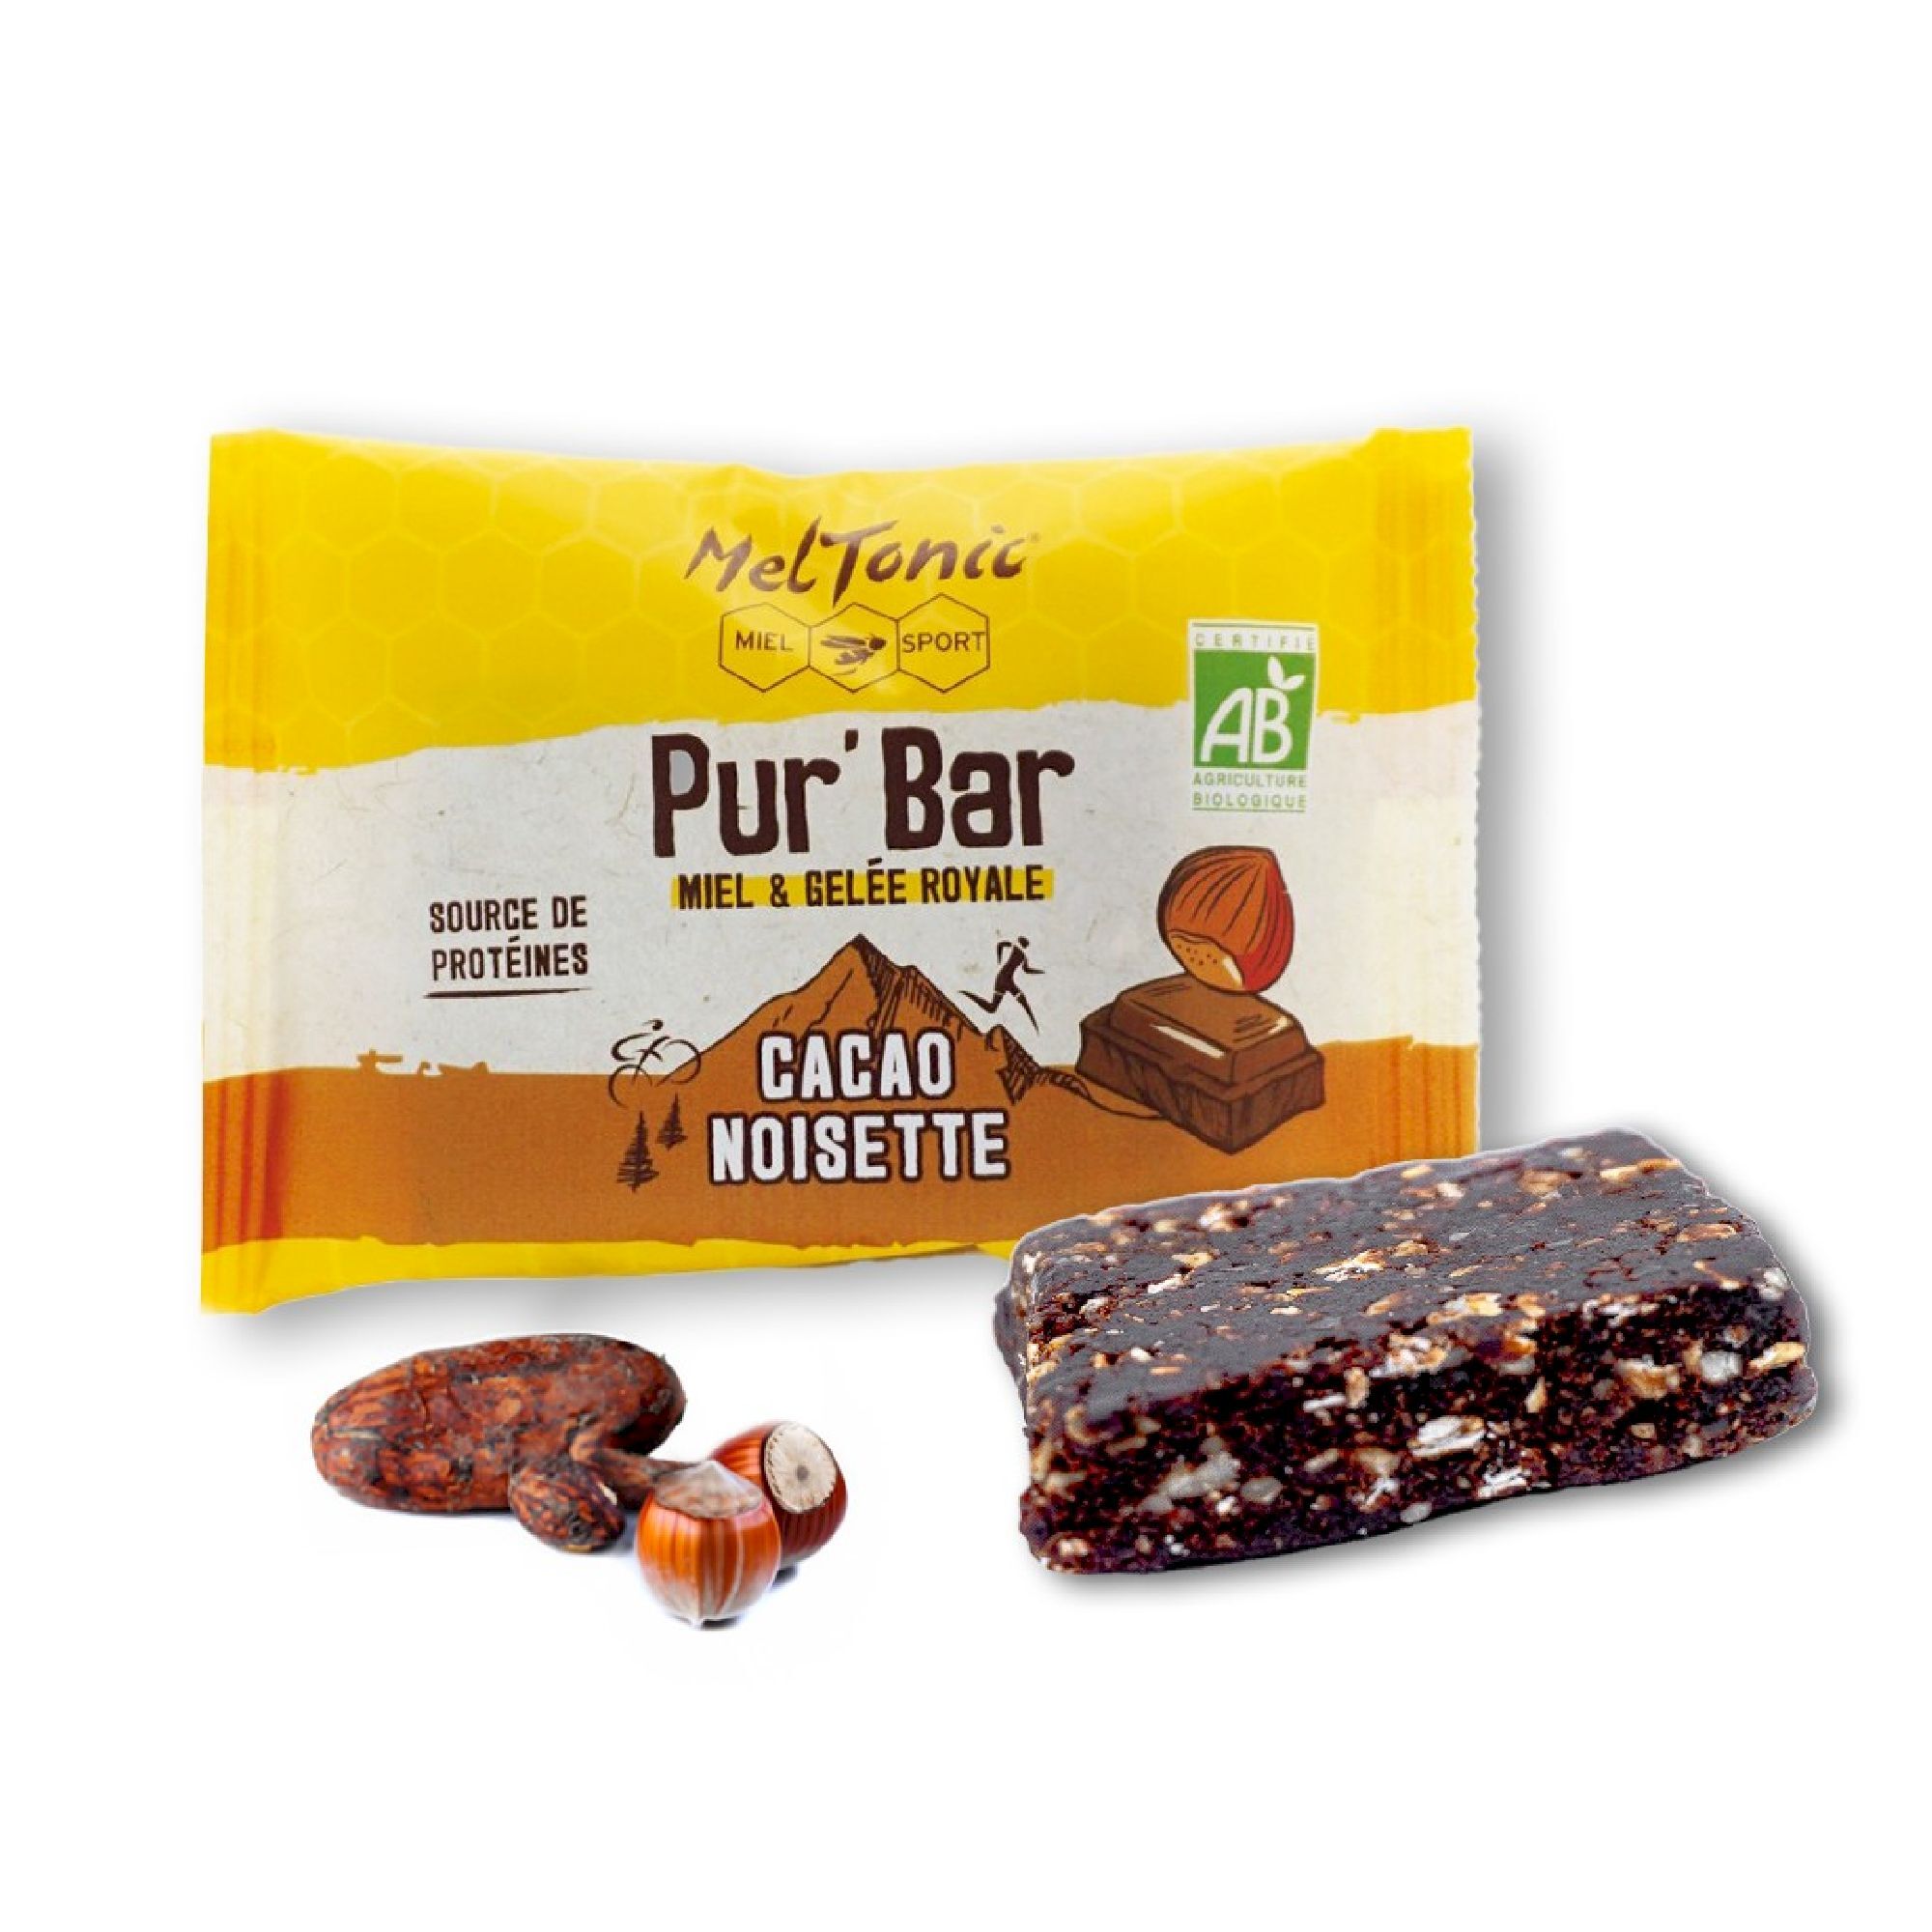 Meltonic Pur' Bar Bio Cacao Noisette Miel & Gelée Royale - Energieriegel | Hardloop